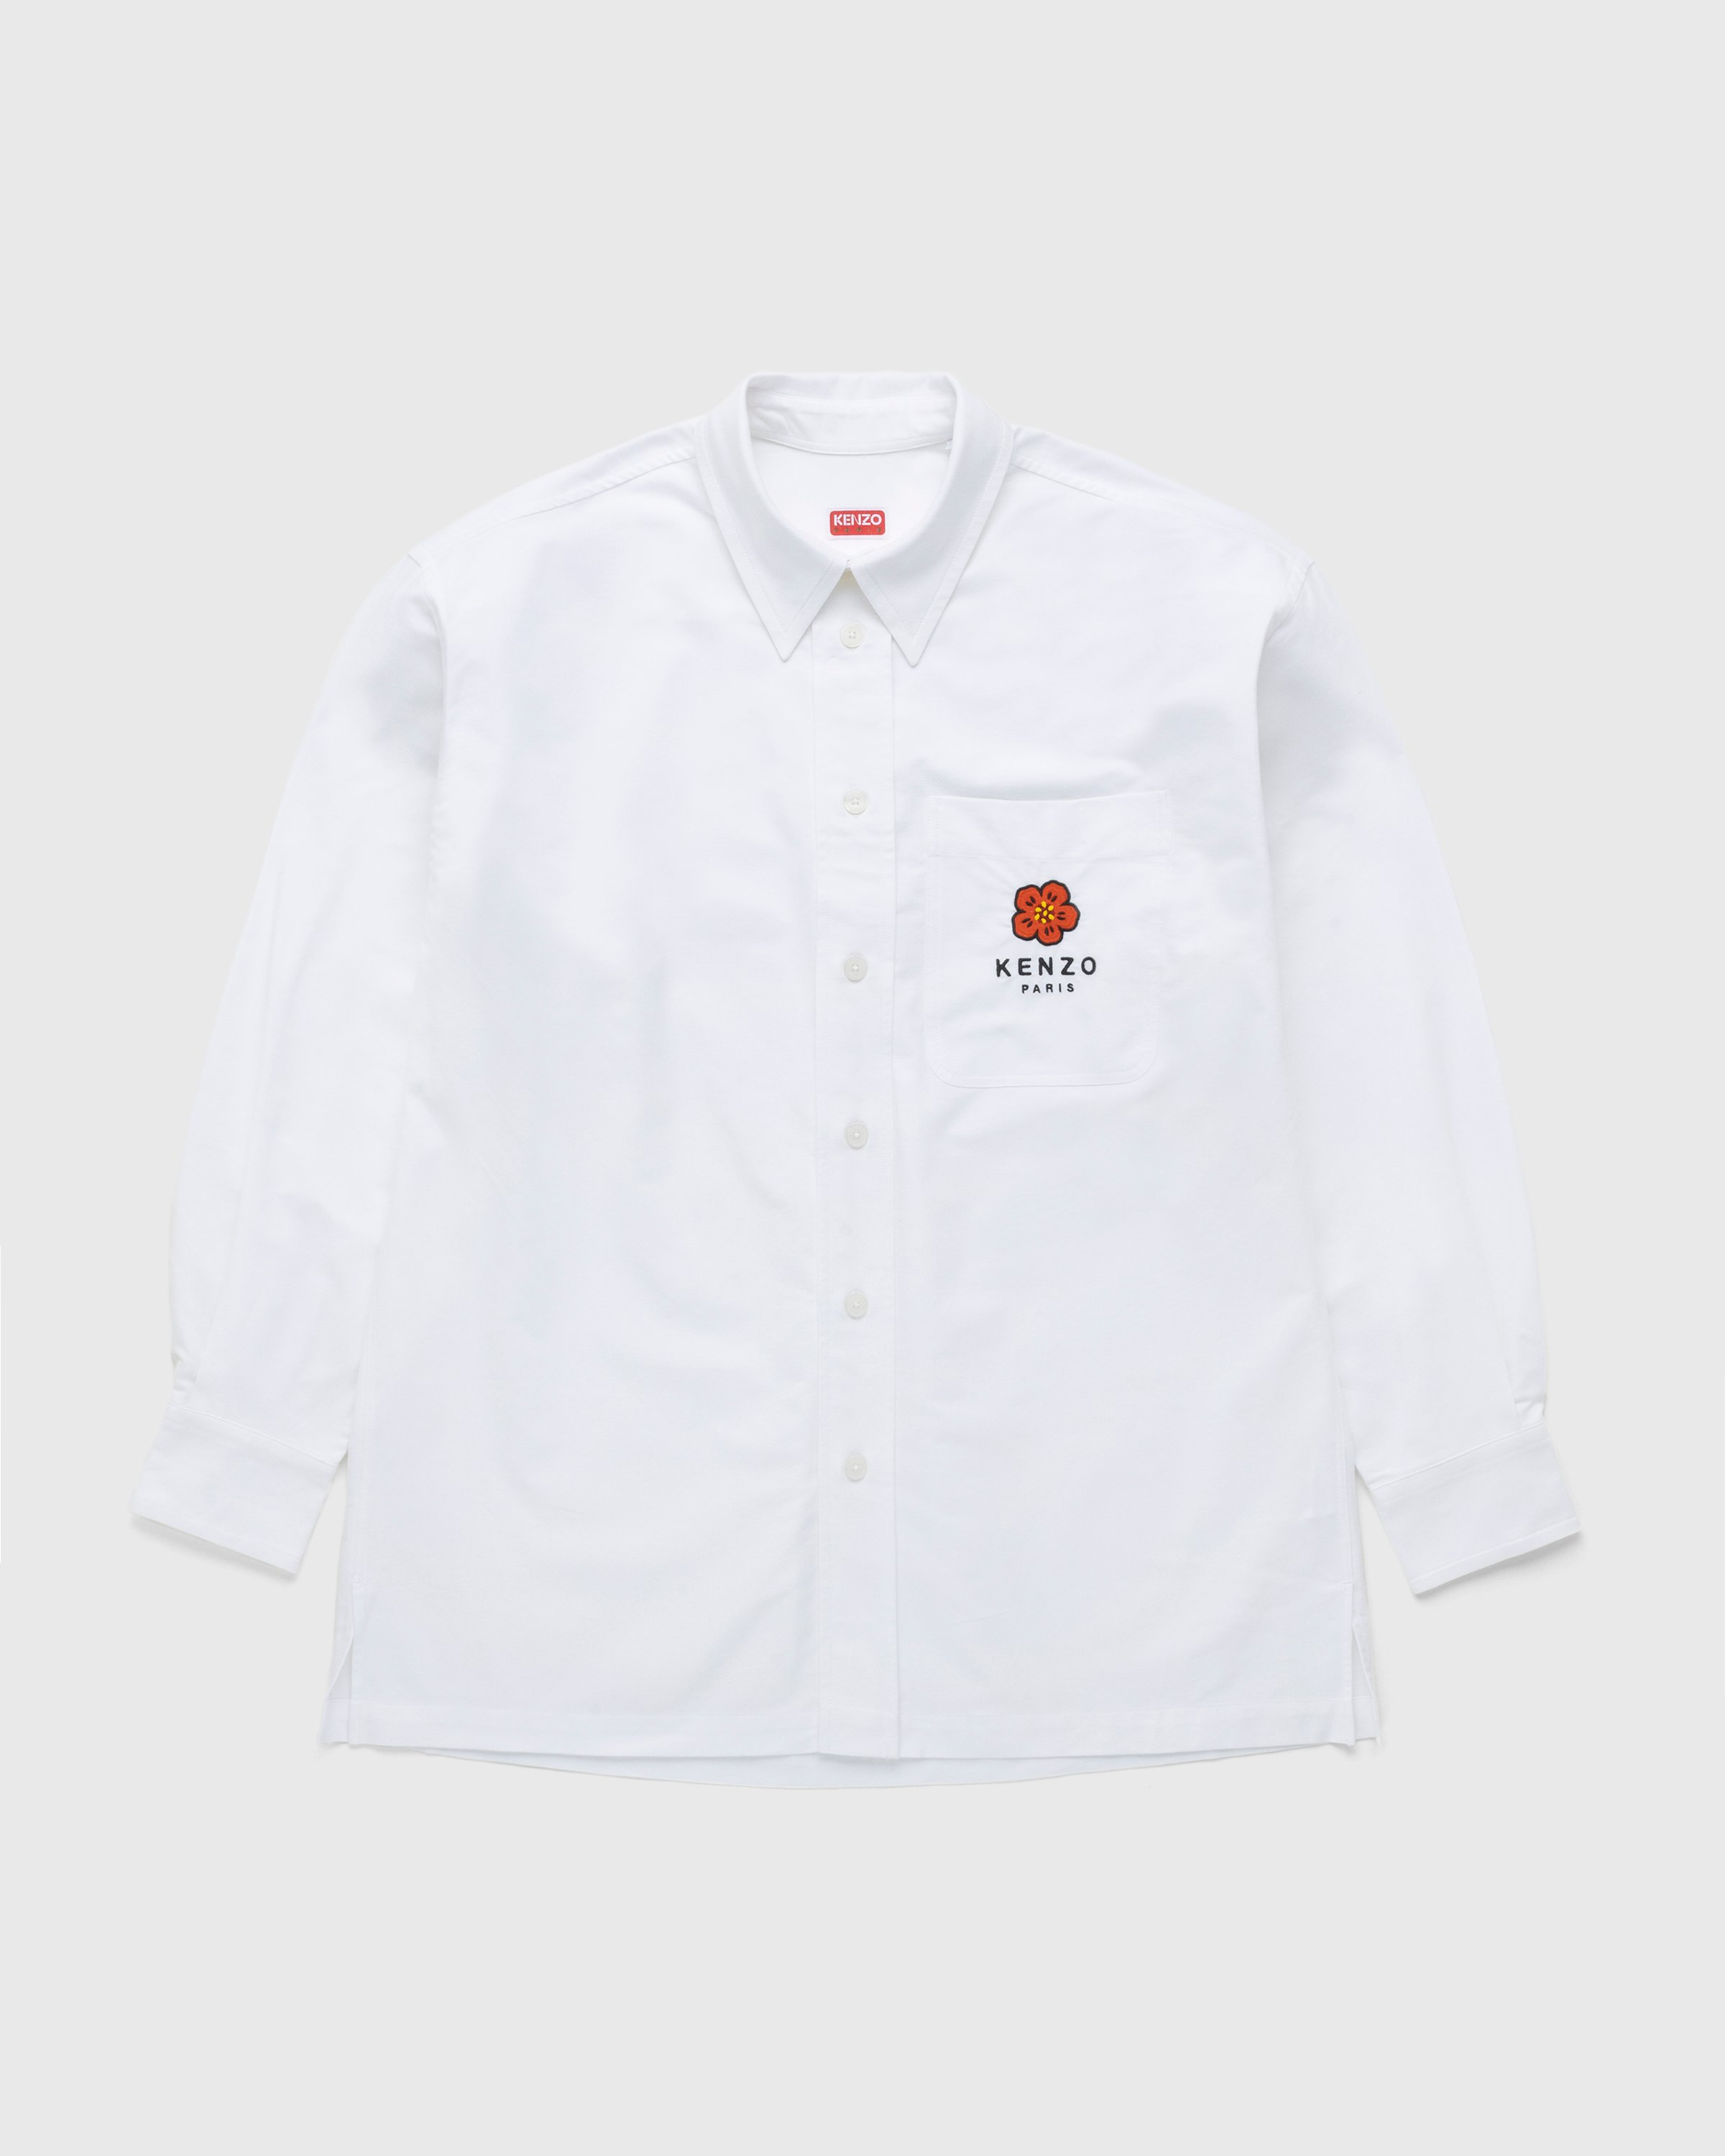 Kenzo - Boke Flower Crest Overshirt White - Clothing - White - Image 1